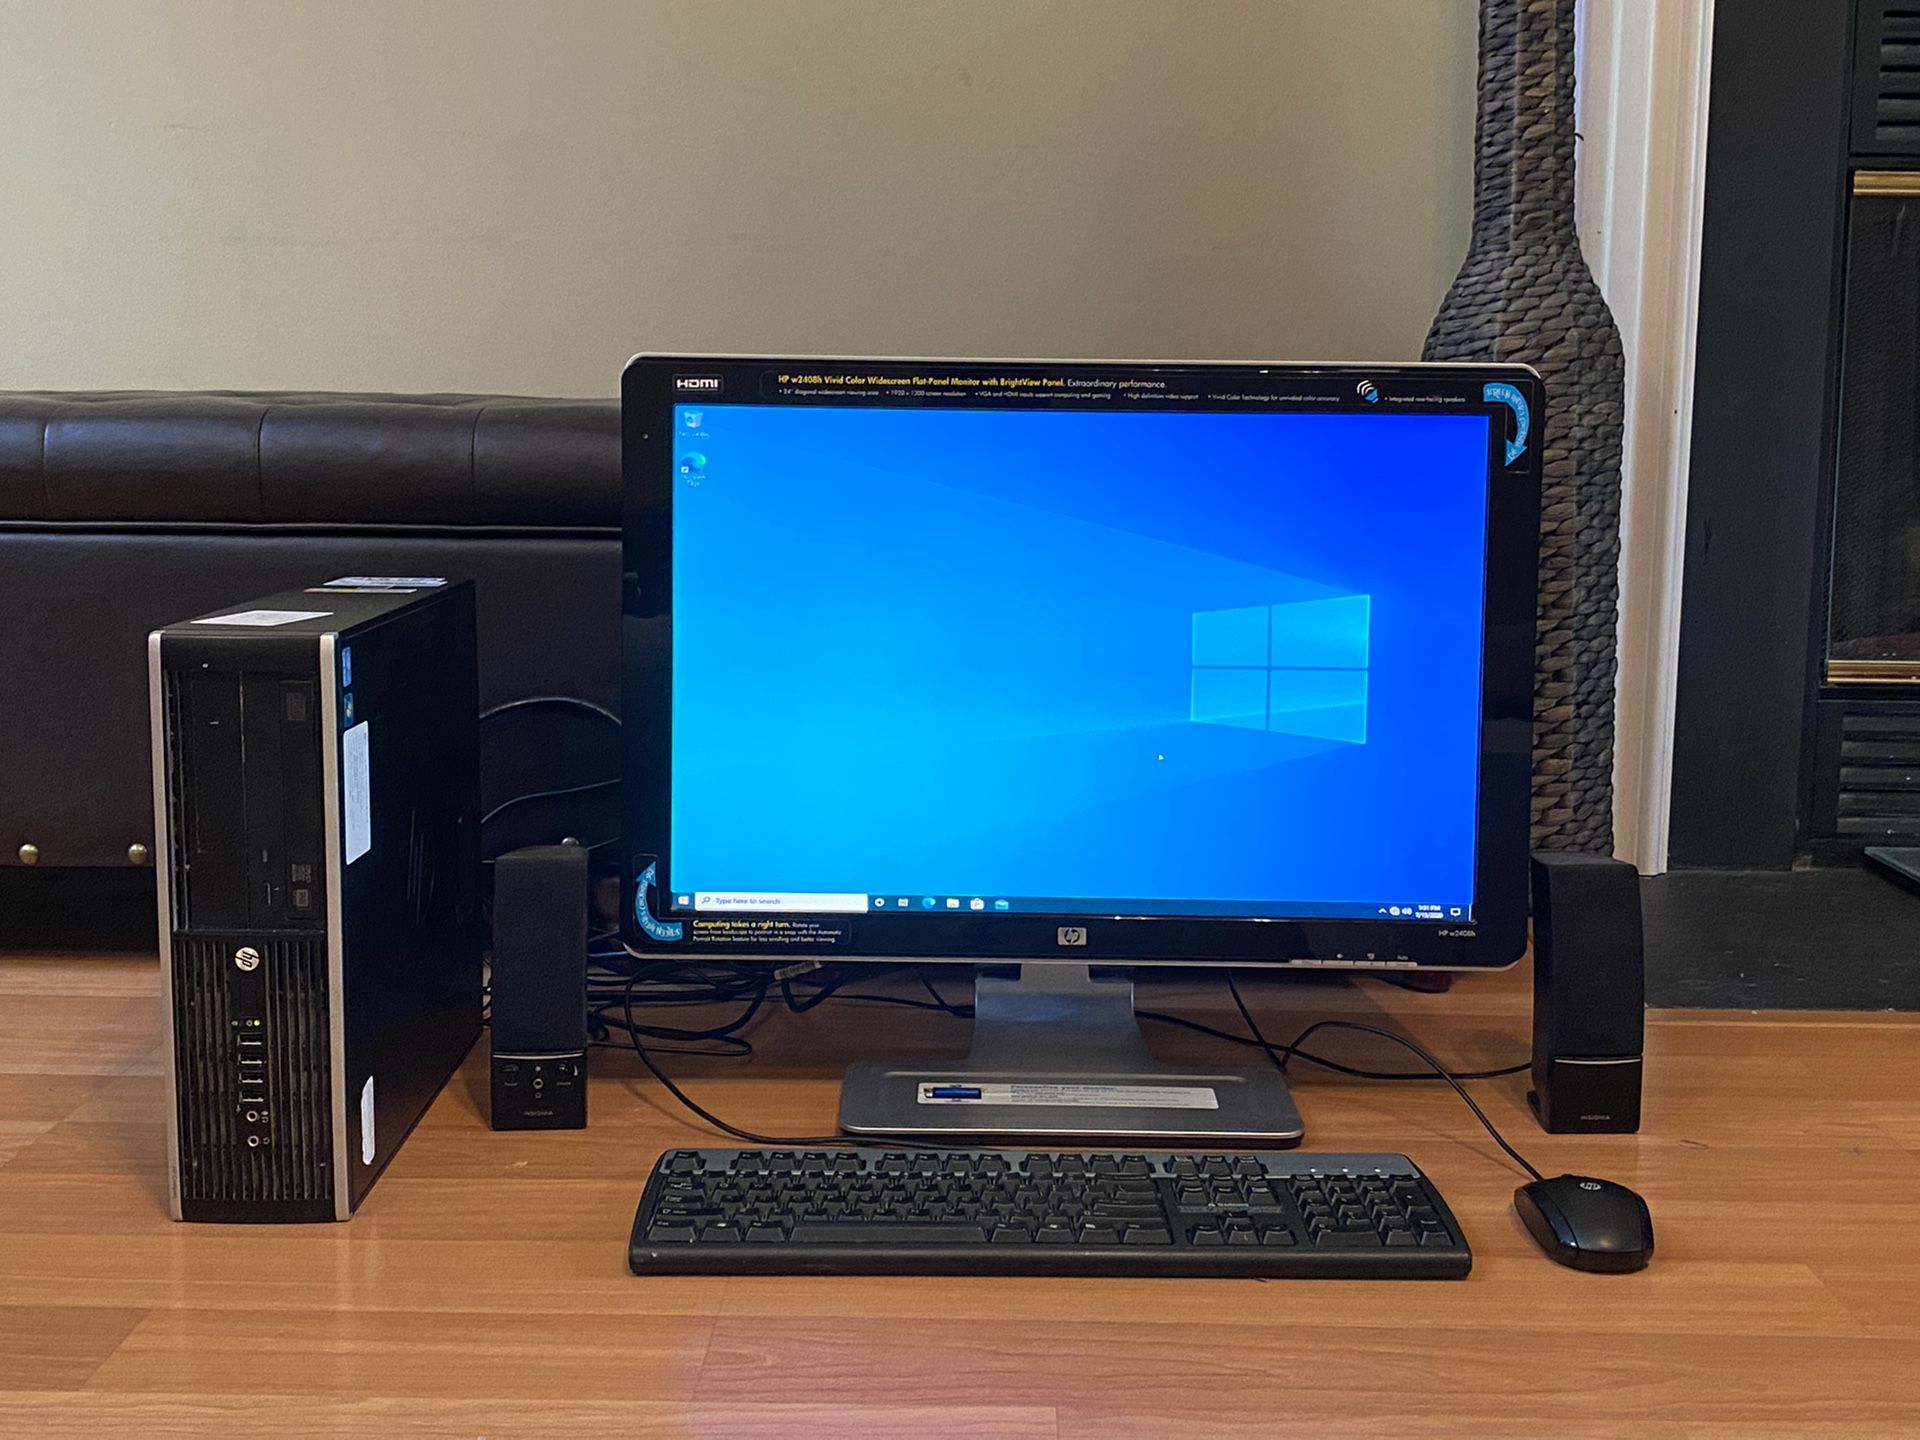 HP Computer and Monitor